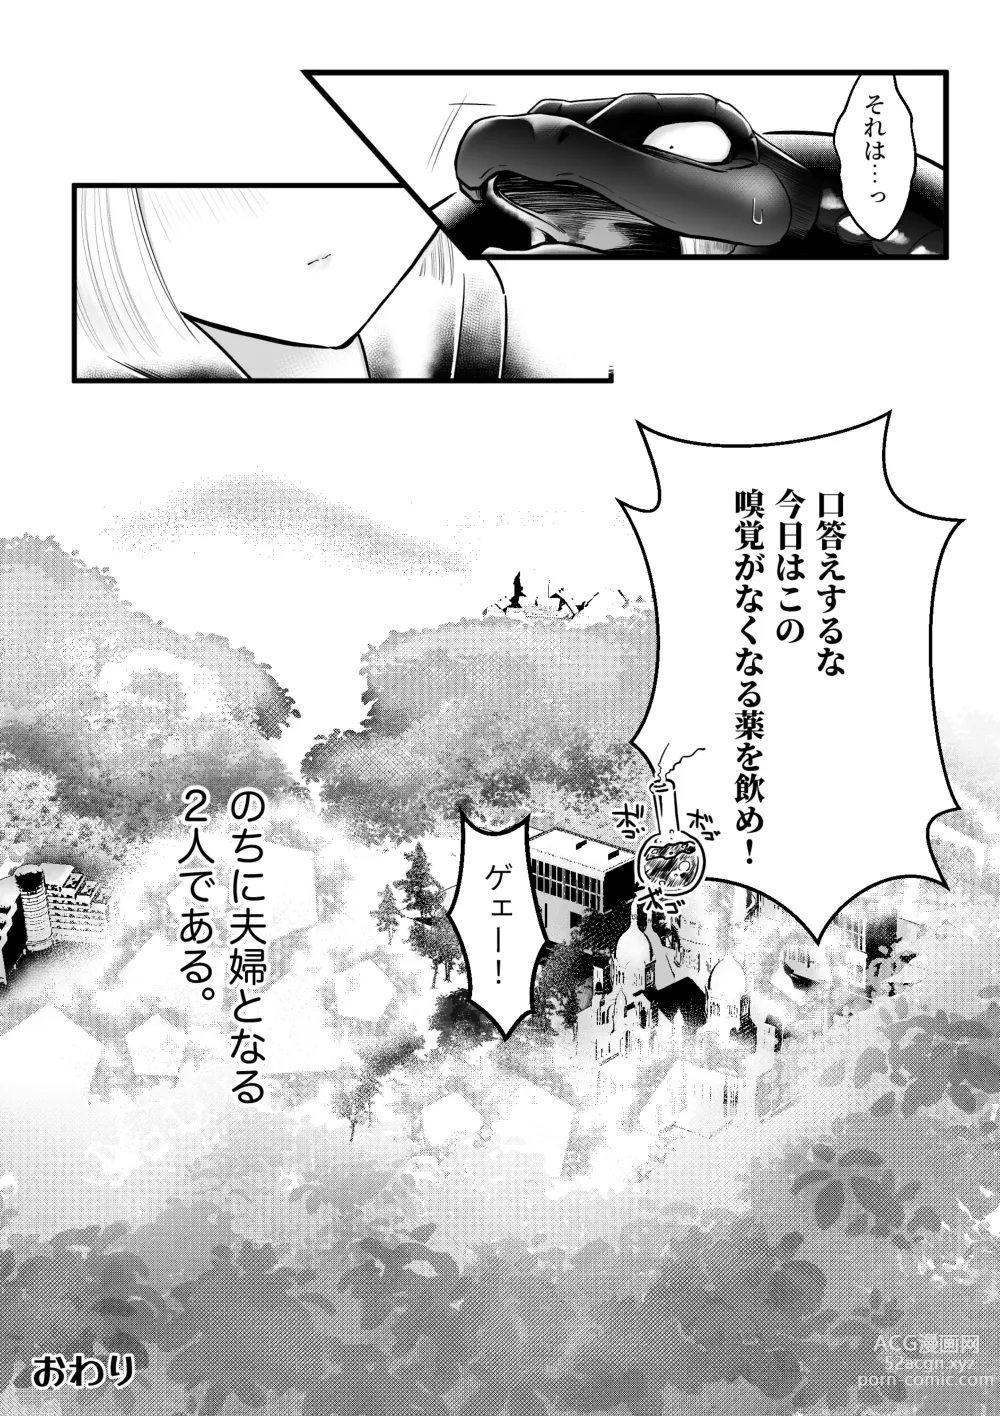 Page 32 of doujinshi Dakatsu no Gotoku Osoreteita Sensei to Kazukazu no Ero Happening ni Mimawarete Kindan no Kankaku Shadan Otoshiana Kouishou Chiryou